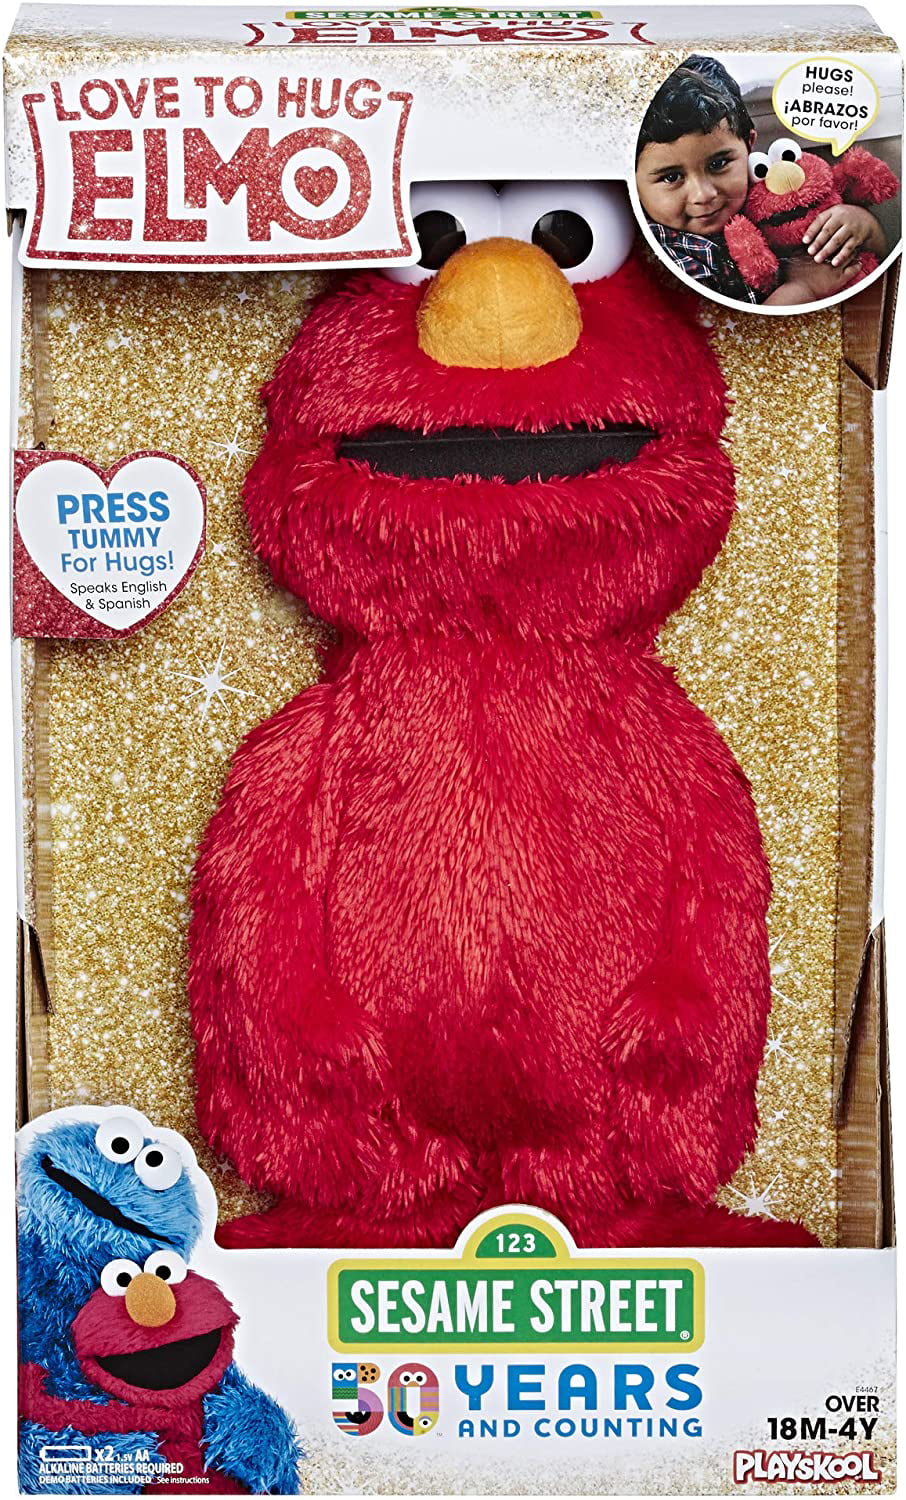 Sesame Street Elmo Plush Doll Backpack Pendant Soft Stuffed Ornament Gift Toys 